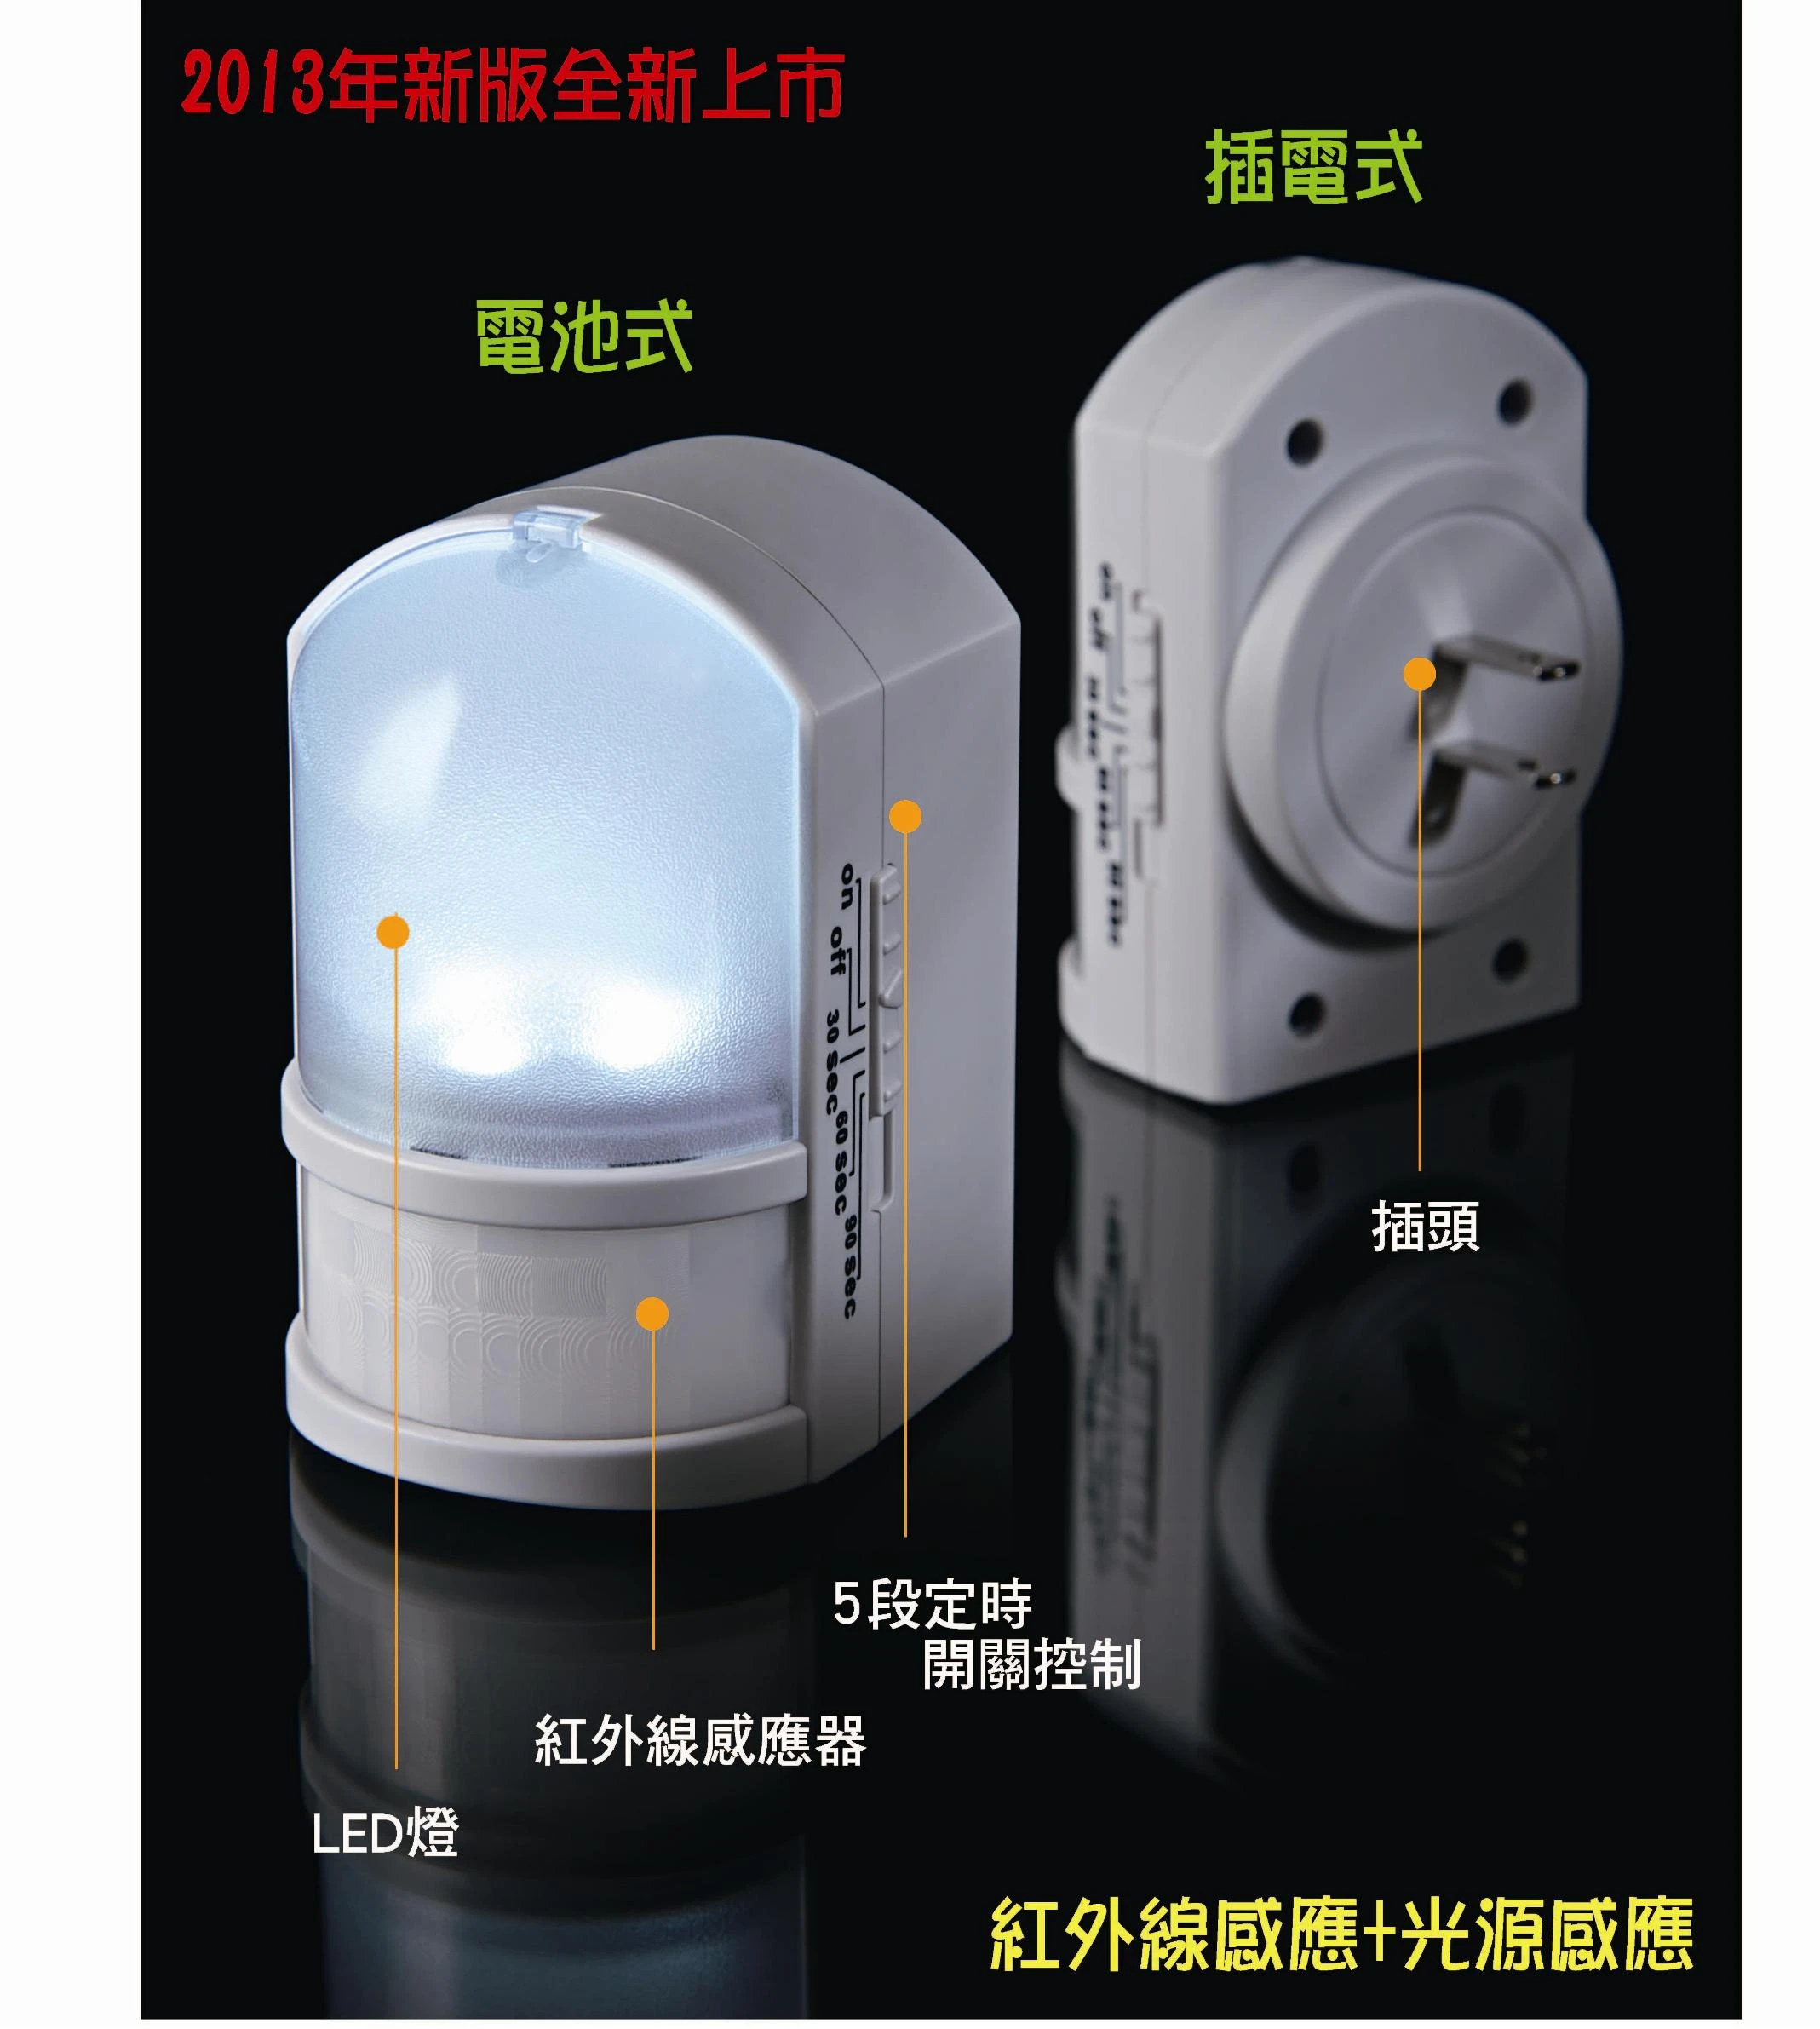 LED紅外線人體感應燈